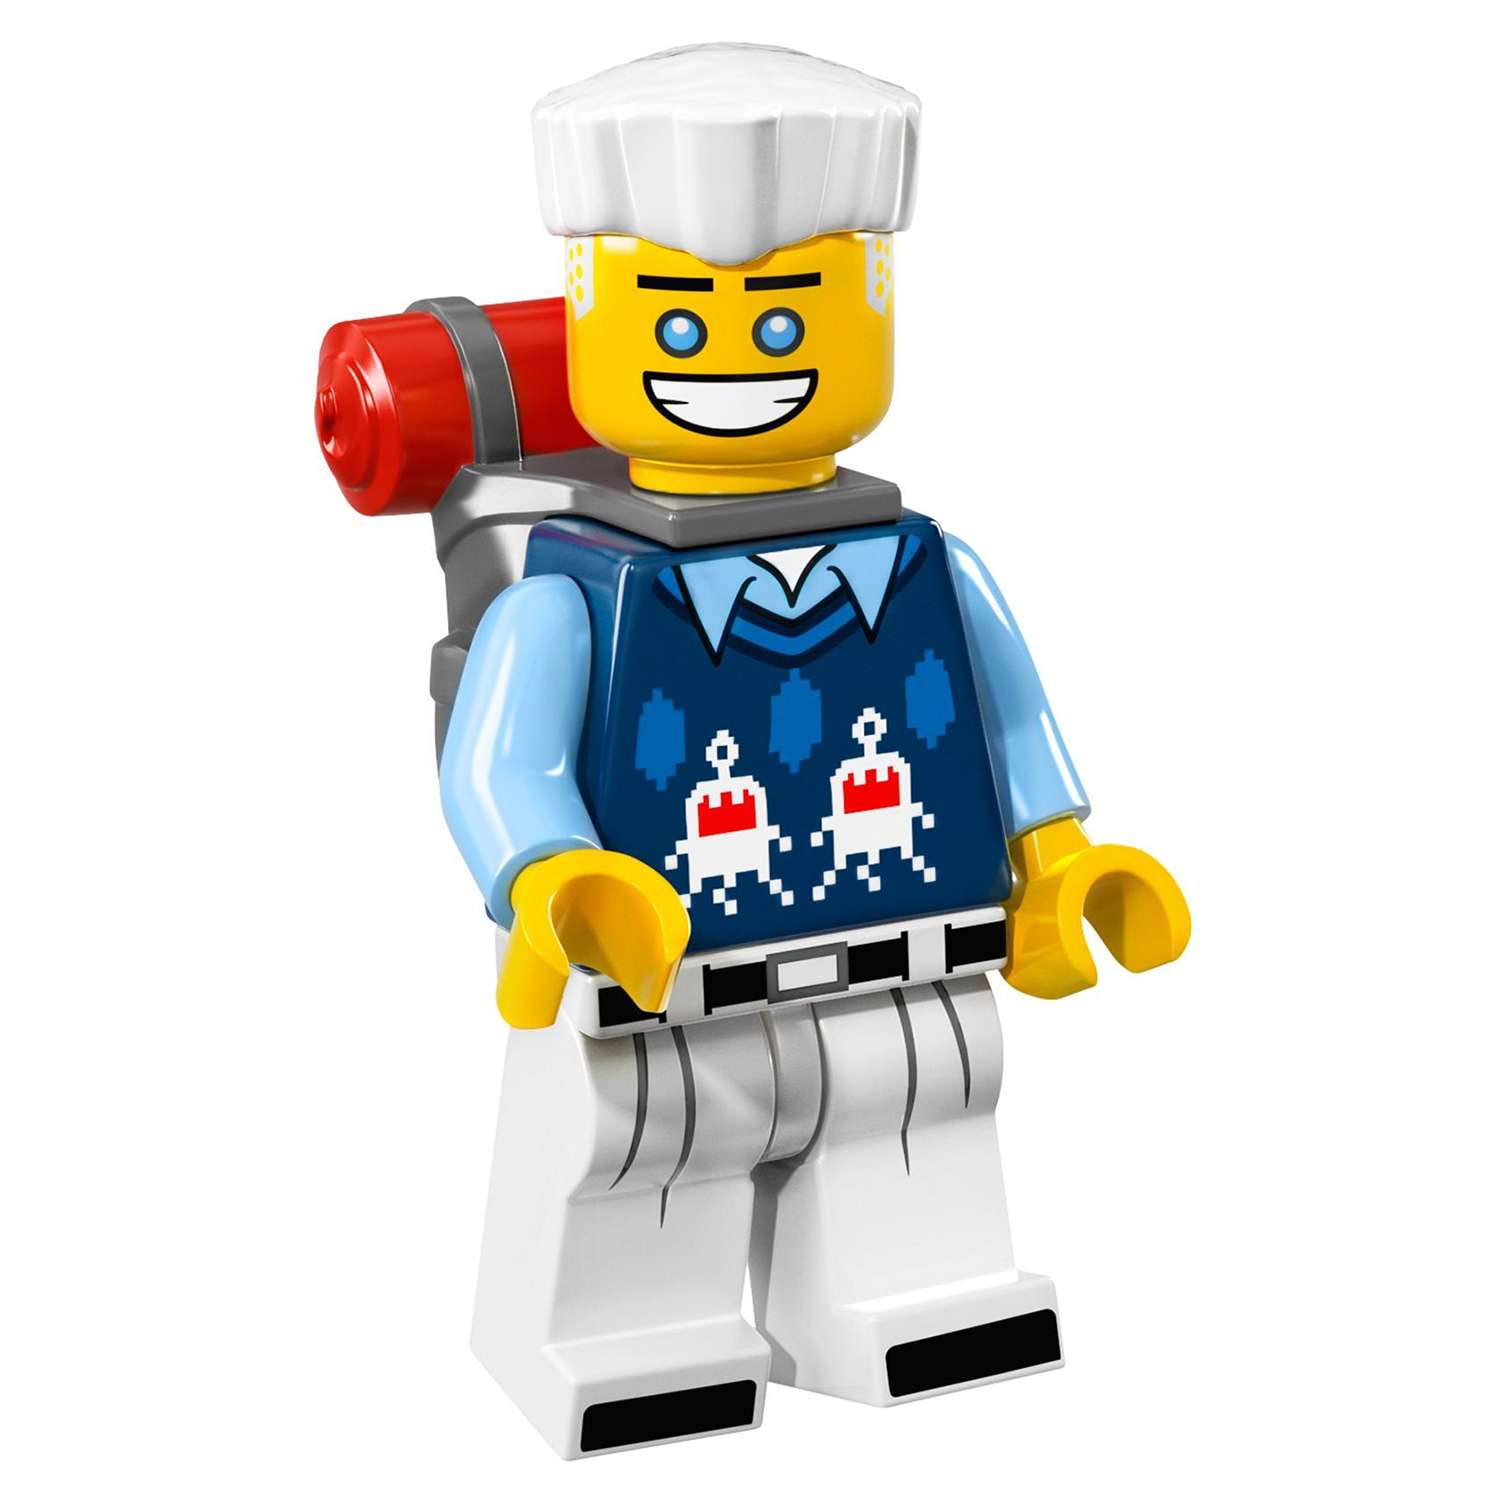 Конструктор LEGO Minifigures Минифигурки ФИЛЬМ: НИНДЗЯГО (71019) в ассортименте - фото 53